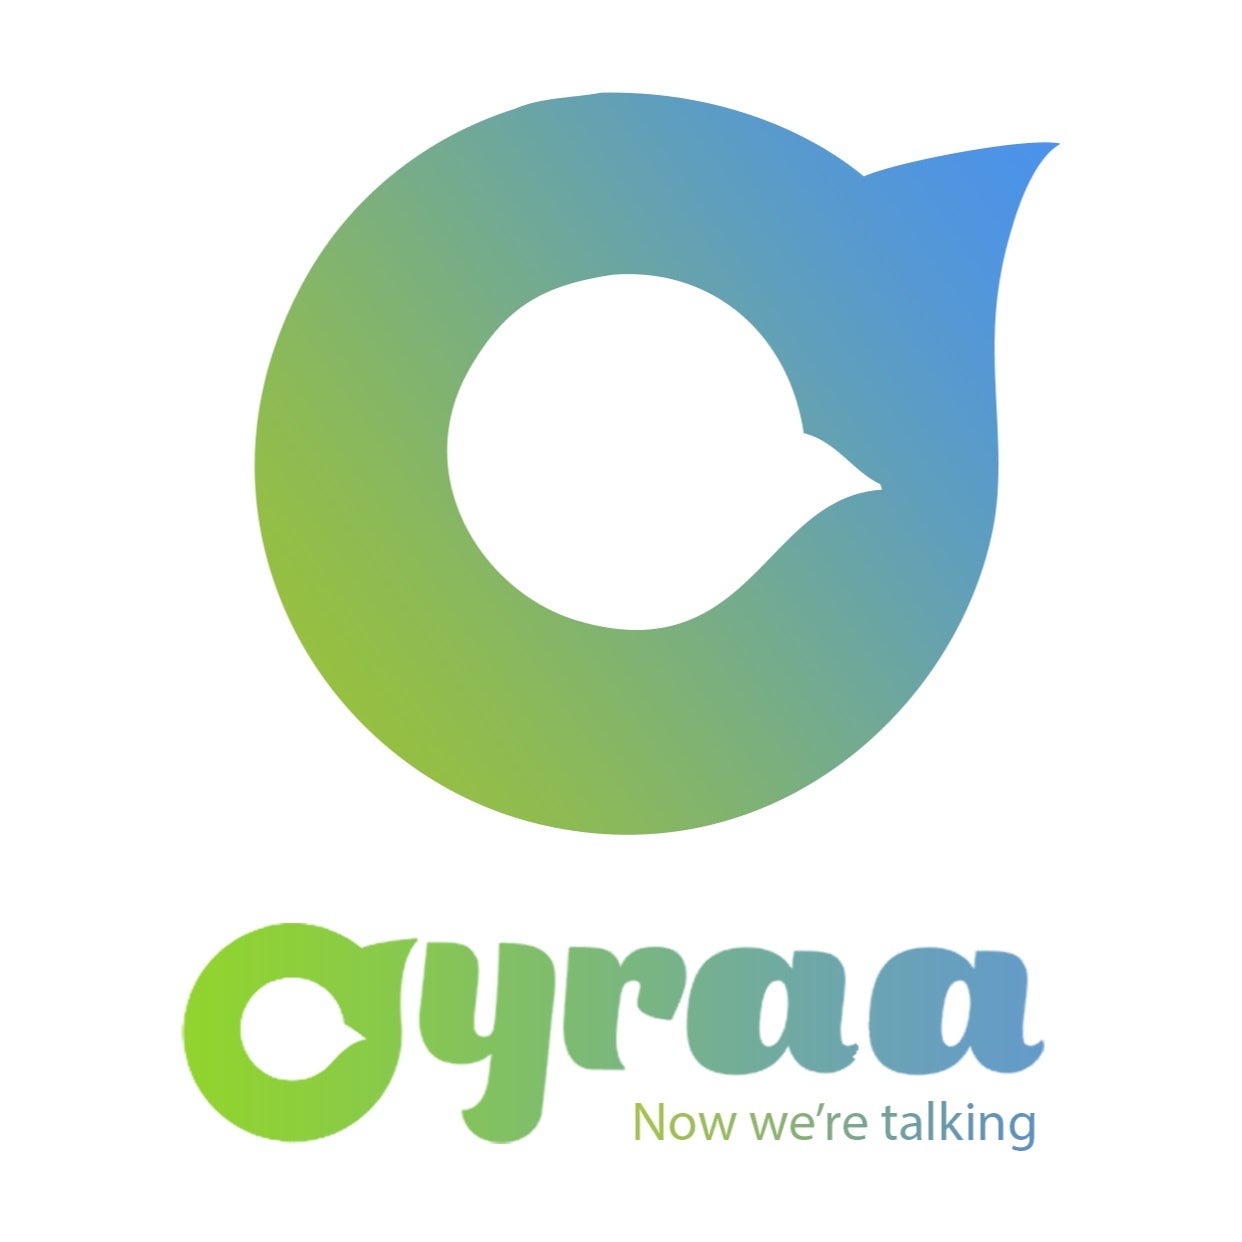 アパマンショップが在留外国人サポートに向けて通訳アプリ『Oyraa』を導入